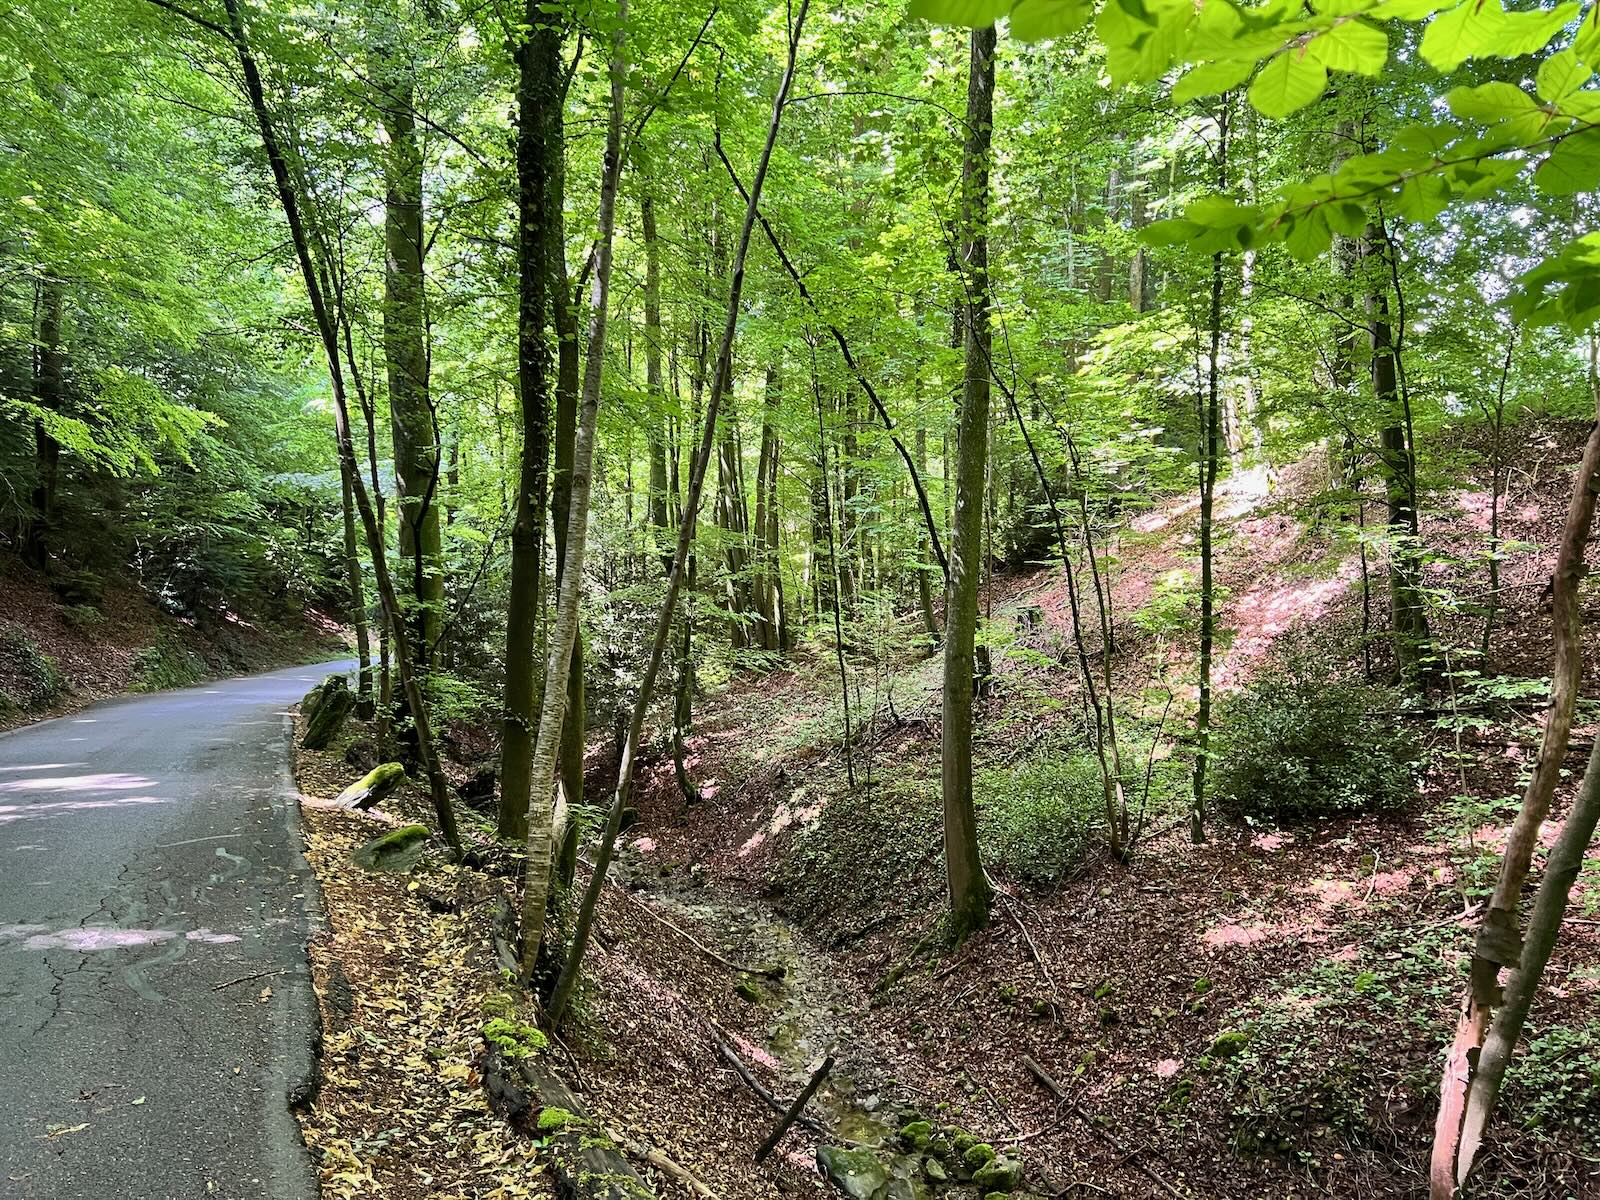 Straße durch den Wald